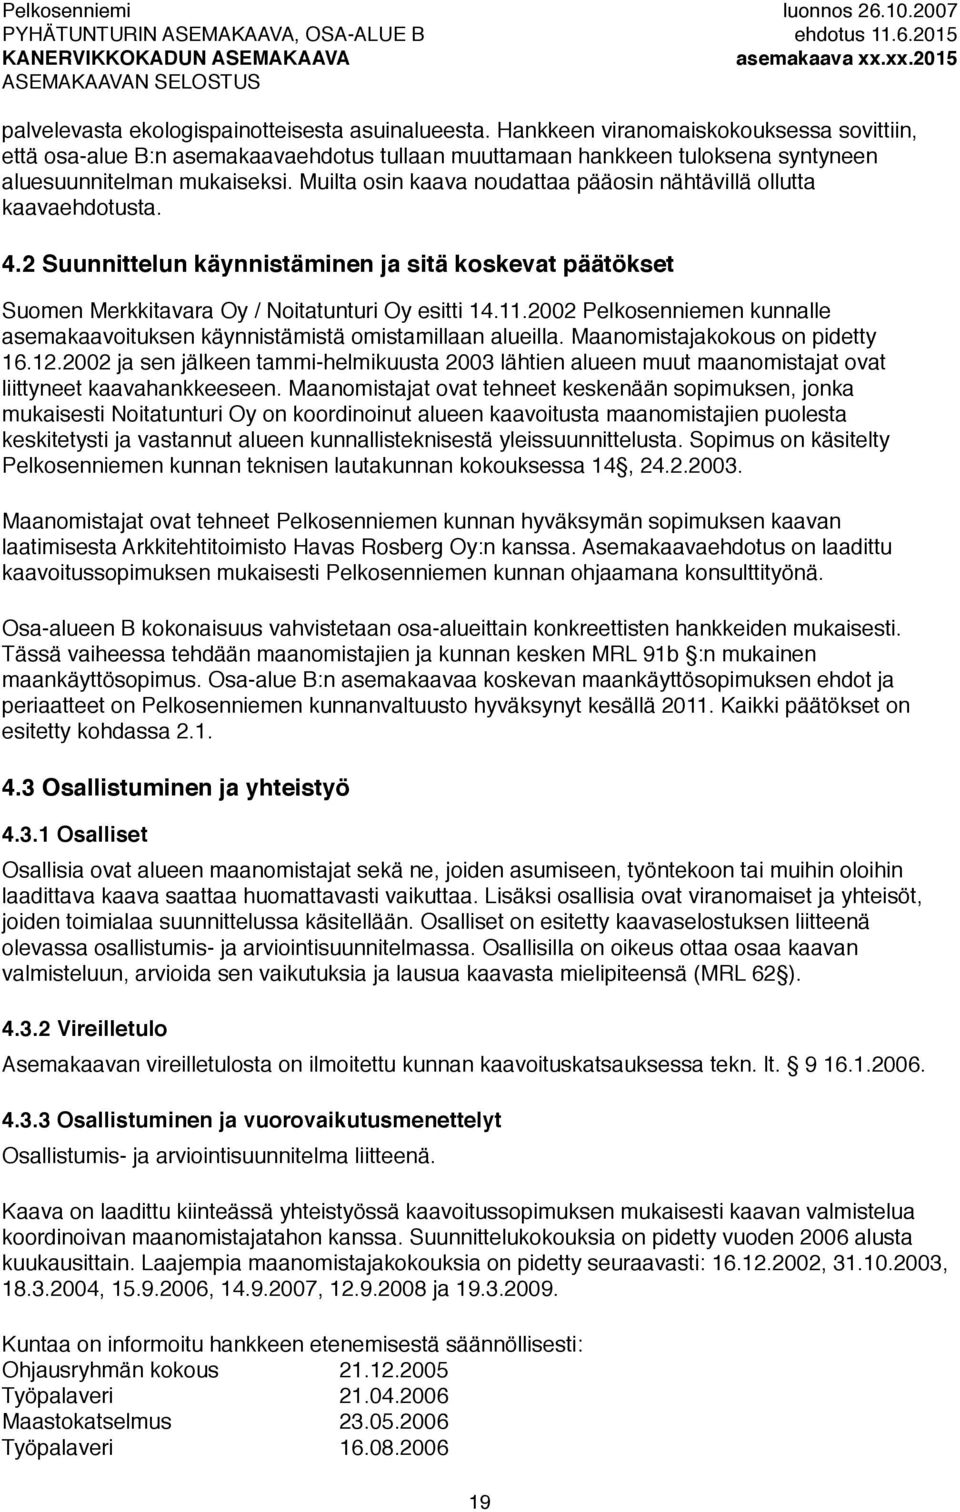 Muilta osin kaava noudattaa pääosin nähtävillä ollutta kaavaehdotusta. 4.2 Suunnittelun käynnistäminen ja sitä koskevat päätökset Suomen Merkkitavara Oy / Noitatunturi Oy esitti 14.11.